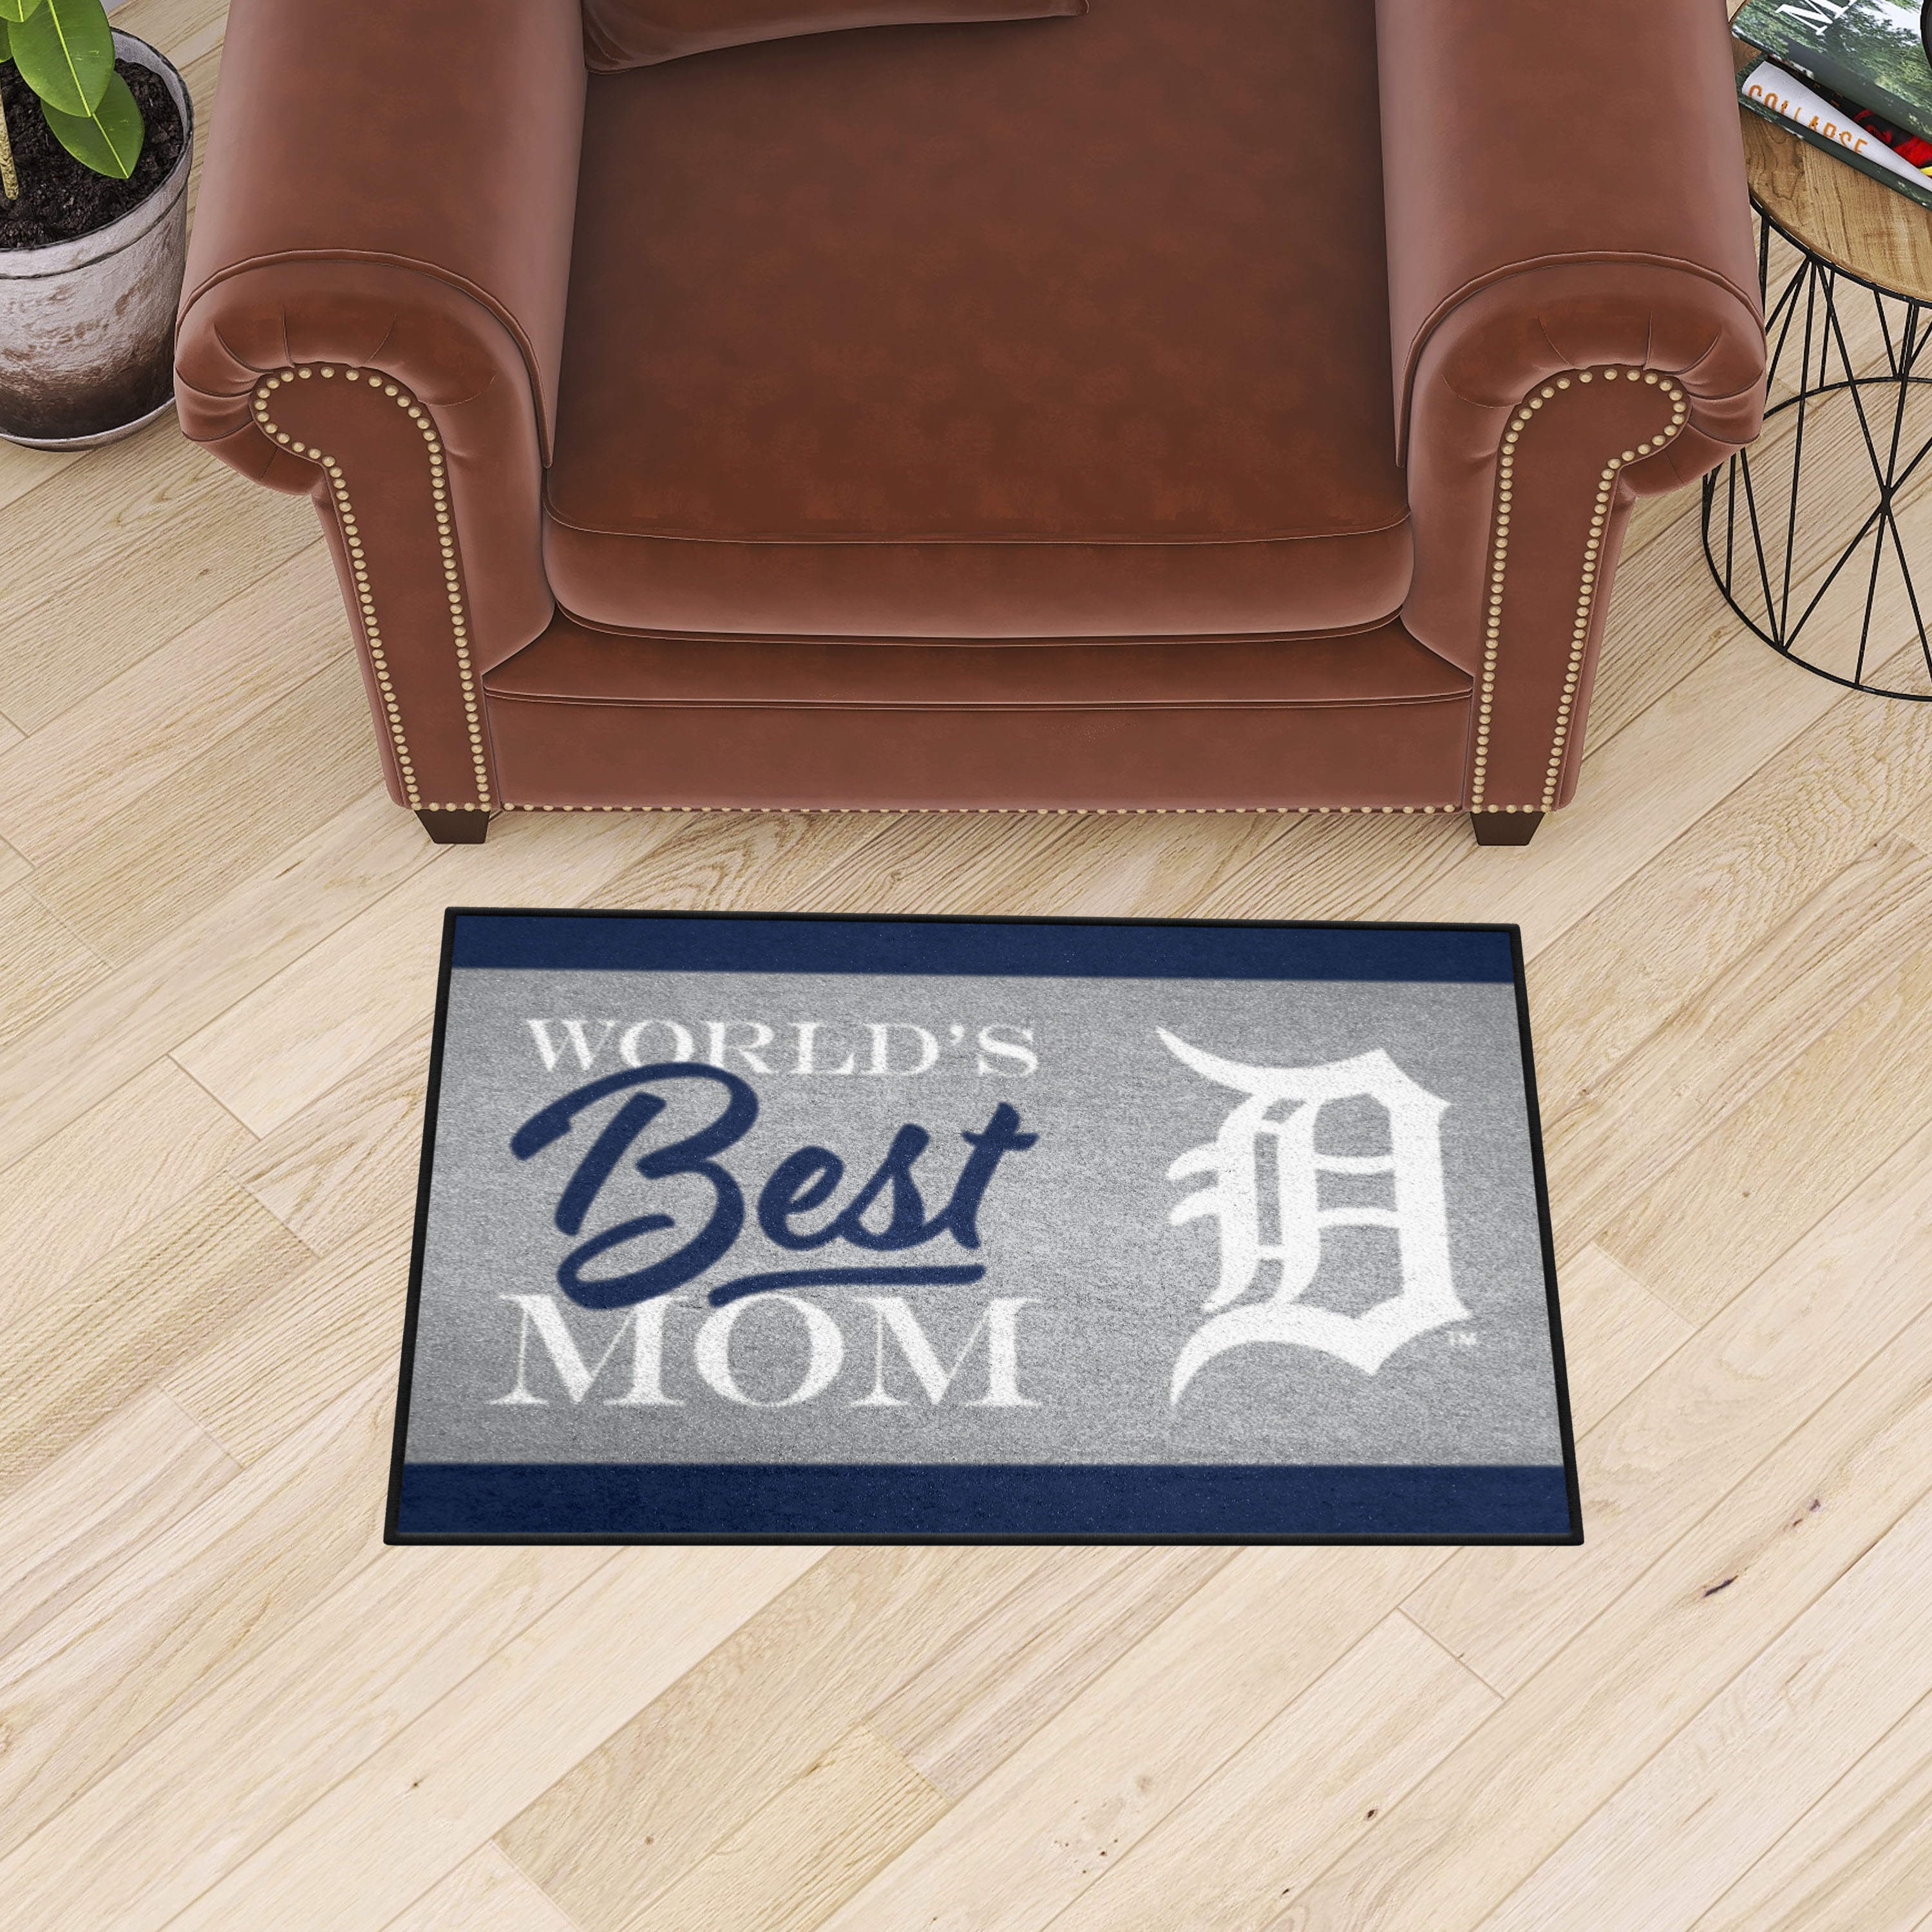 Detroit Tigers World's Best Mom Starter Doormat - 19 x 30